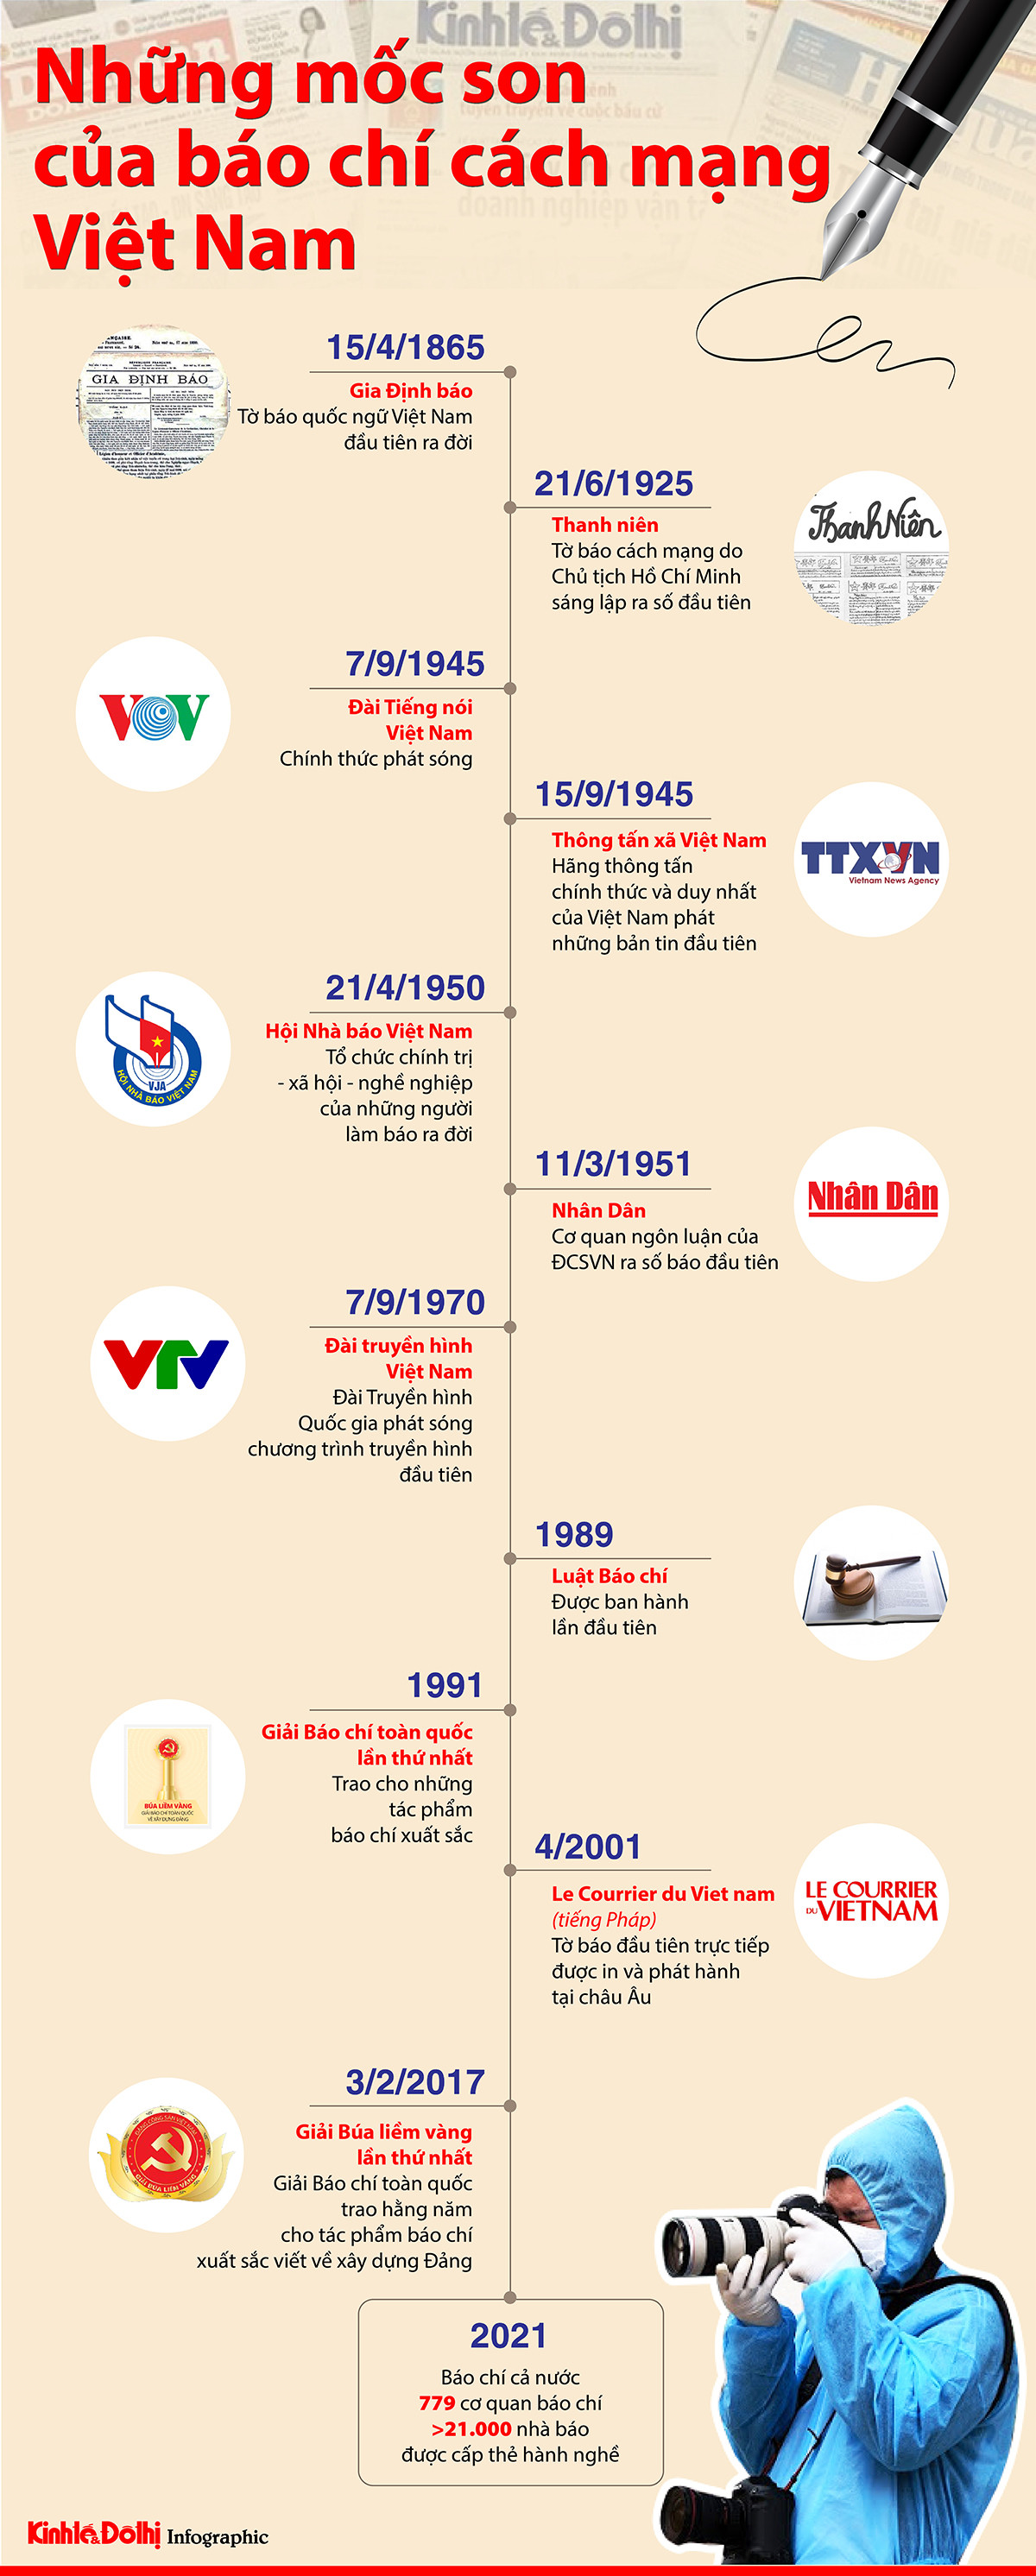 (Infographic) Những mốc son của báo chí cách mạng Việt Nam